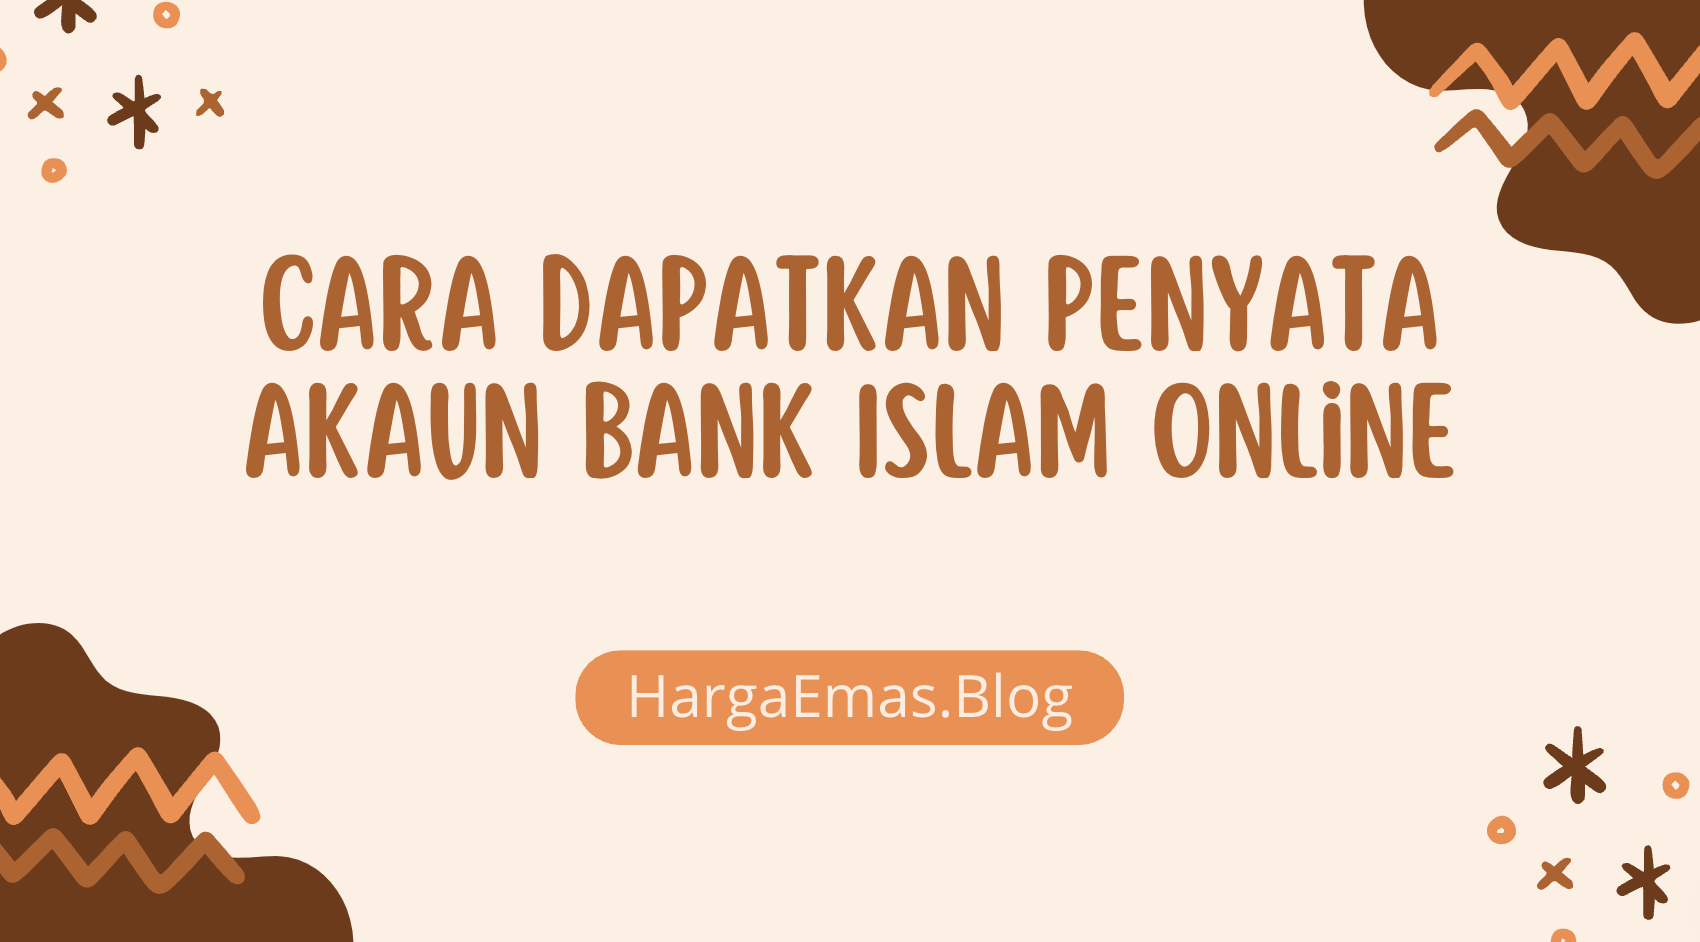 Cara Dapatkan Penyata Akaun Bank Islam Online